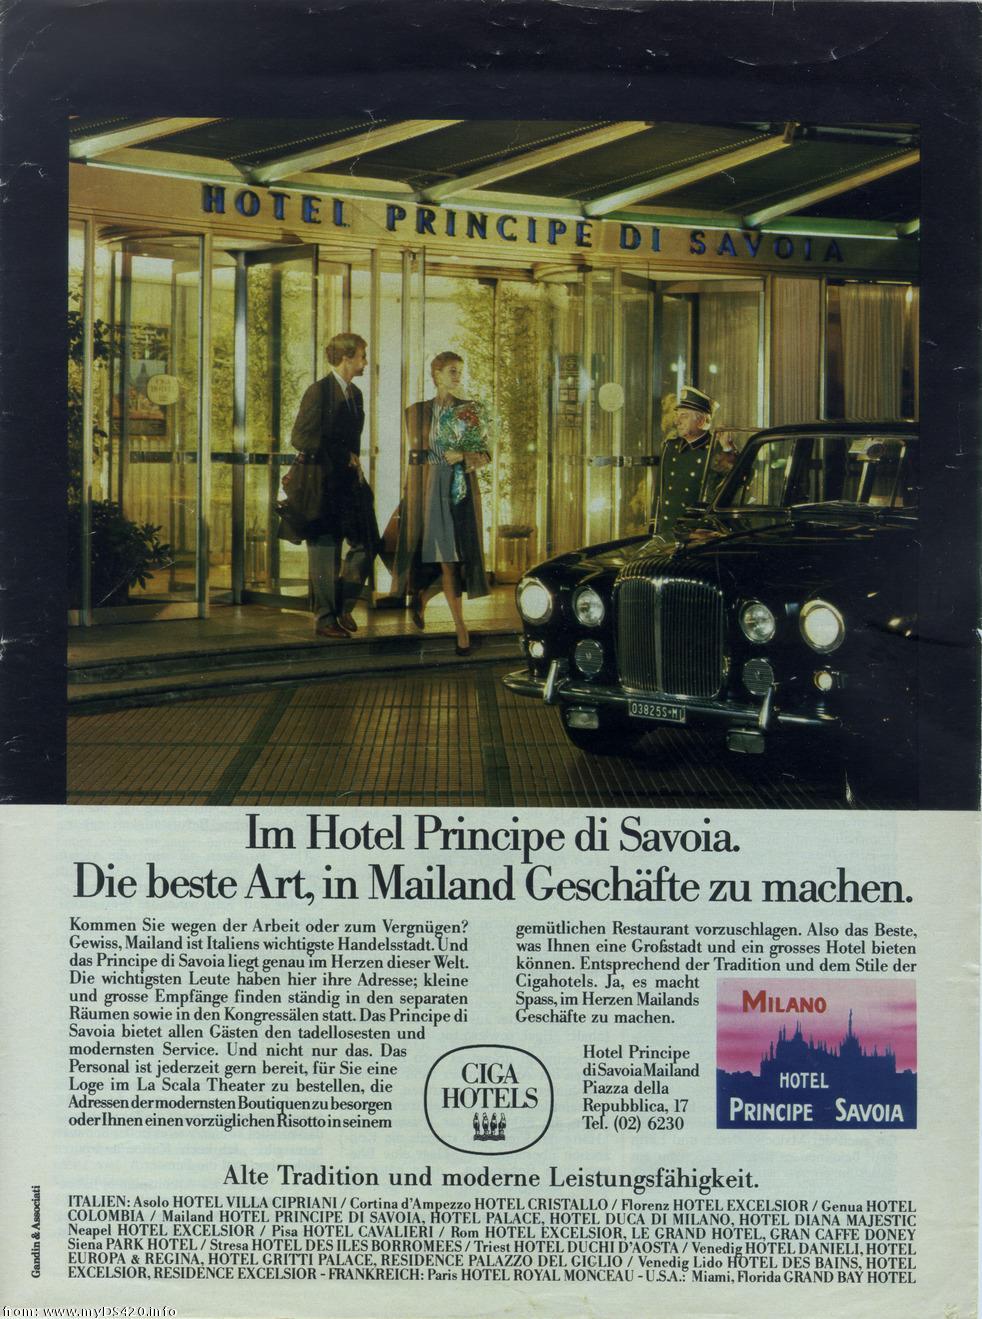 Principe di Savoia '70 HotelSavoia